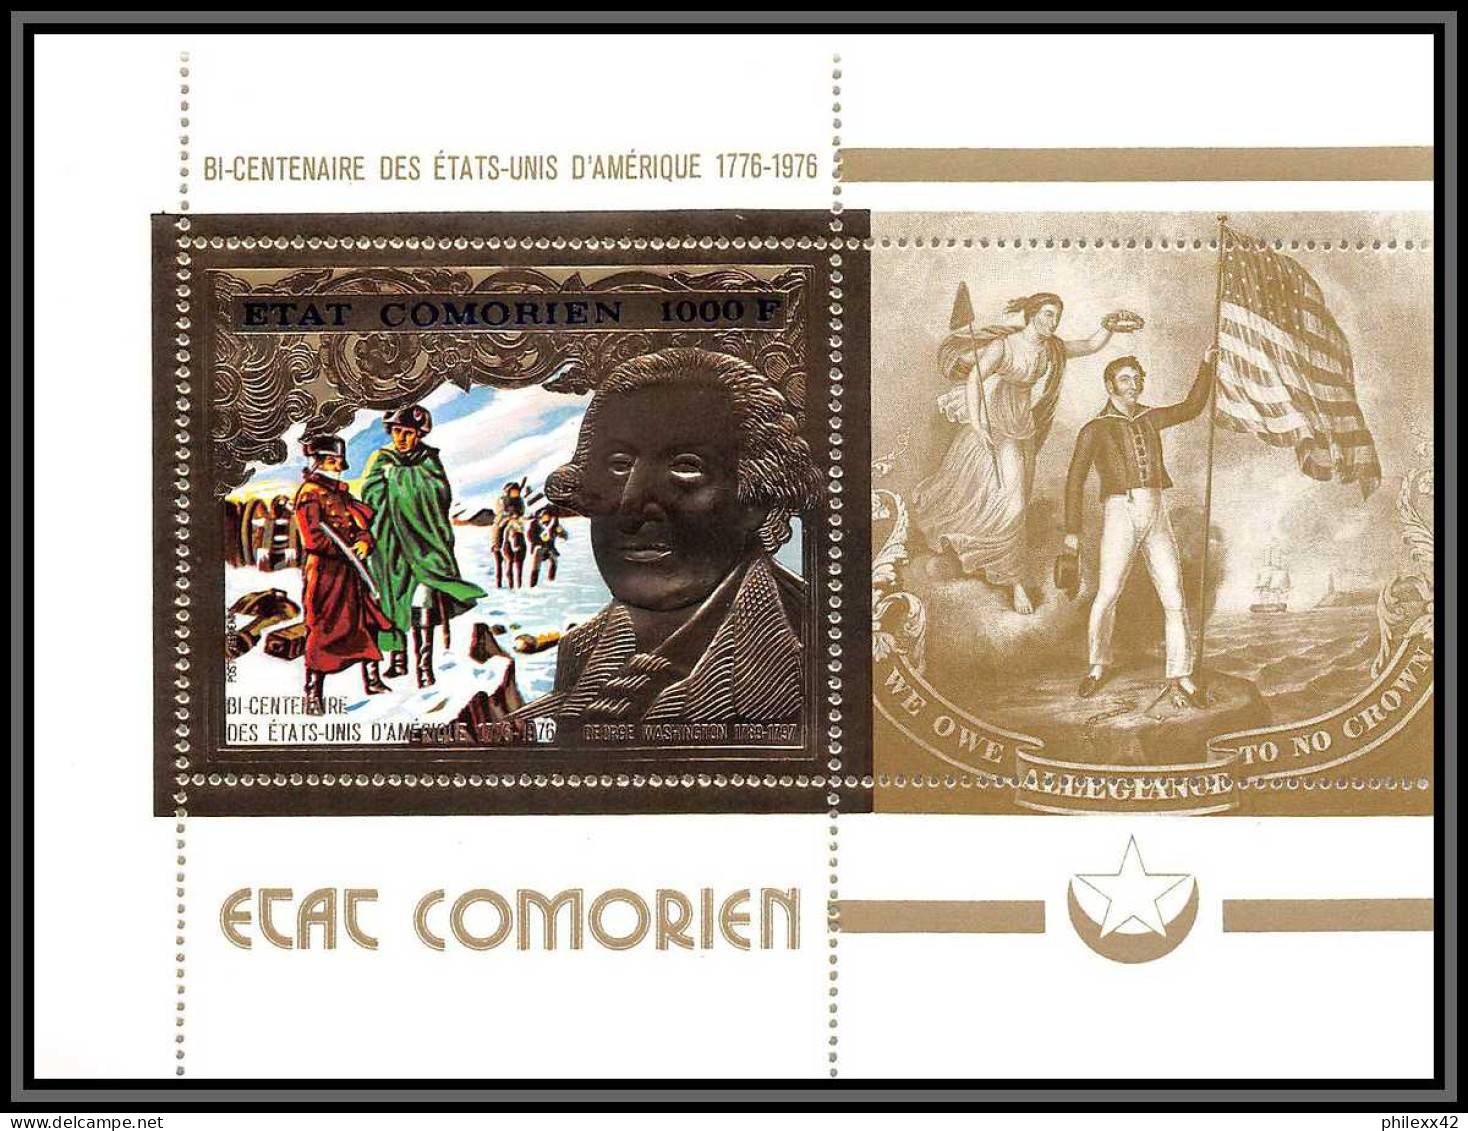 85738a N°18 A USA Bi-centennial Washington 1976 Comores Etat Comorien Timbres OR Gold Stamps ** MNH  - Onafhankelijkheid USA